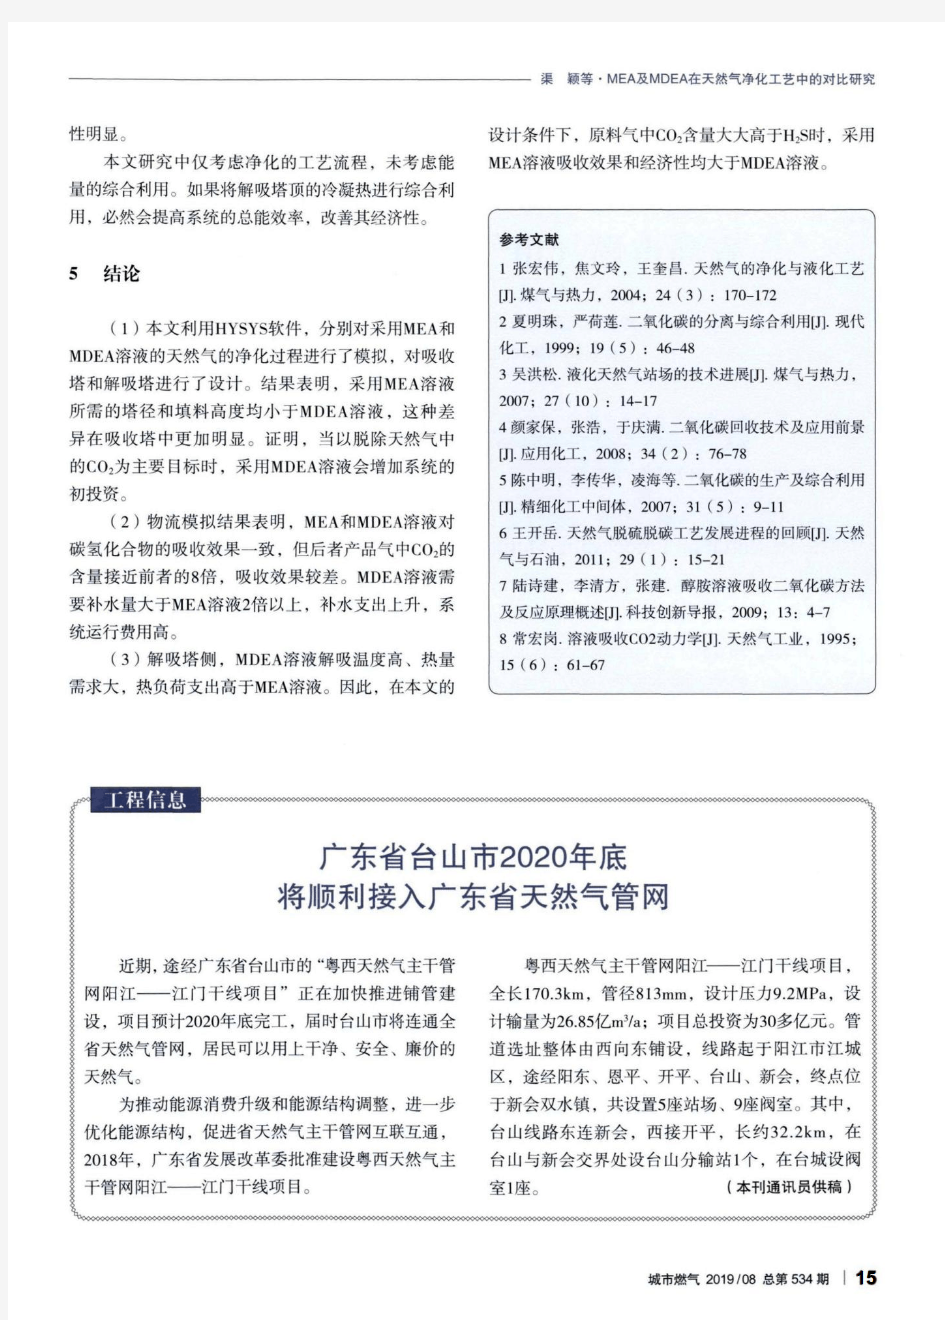 广东省台山市2020年底将顺利接入广东省天然气管网